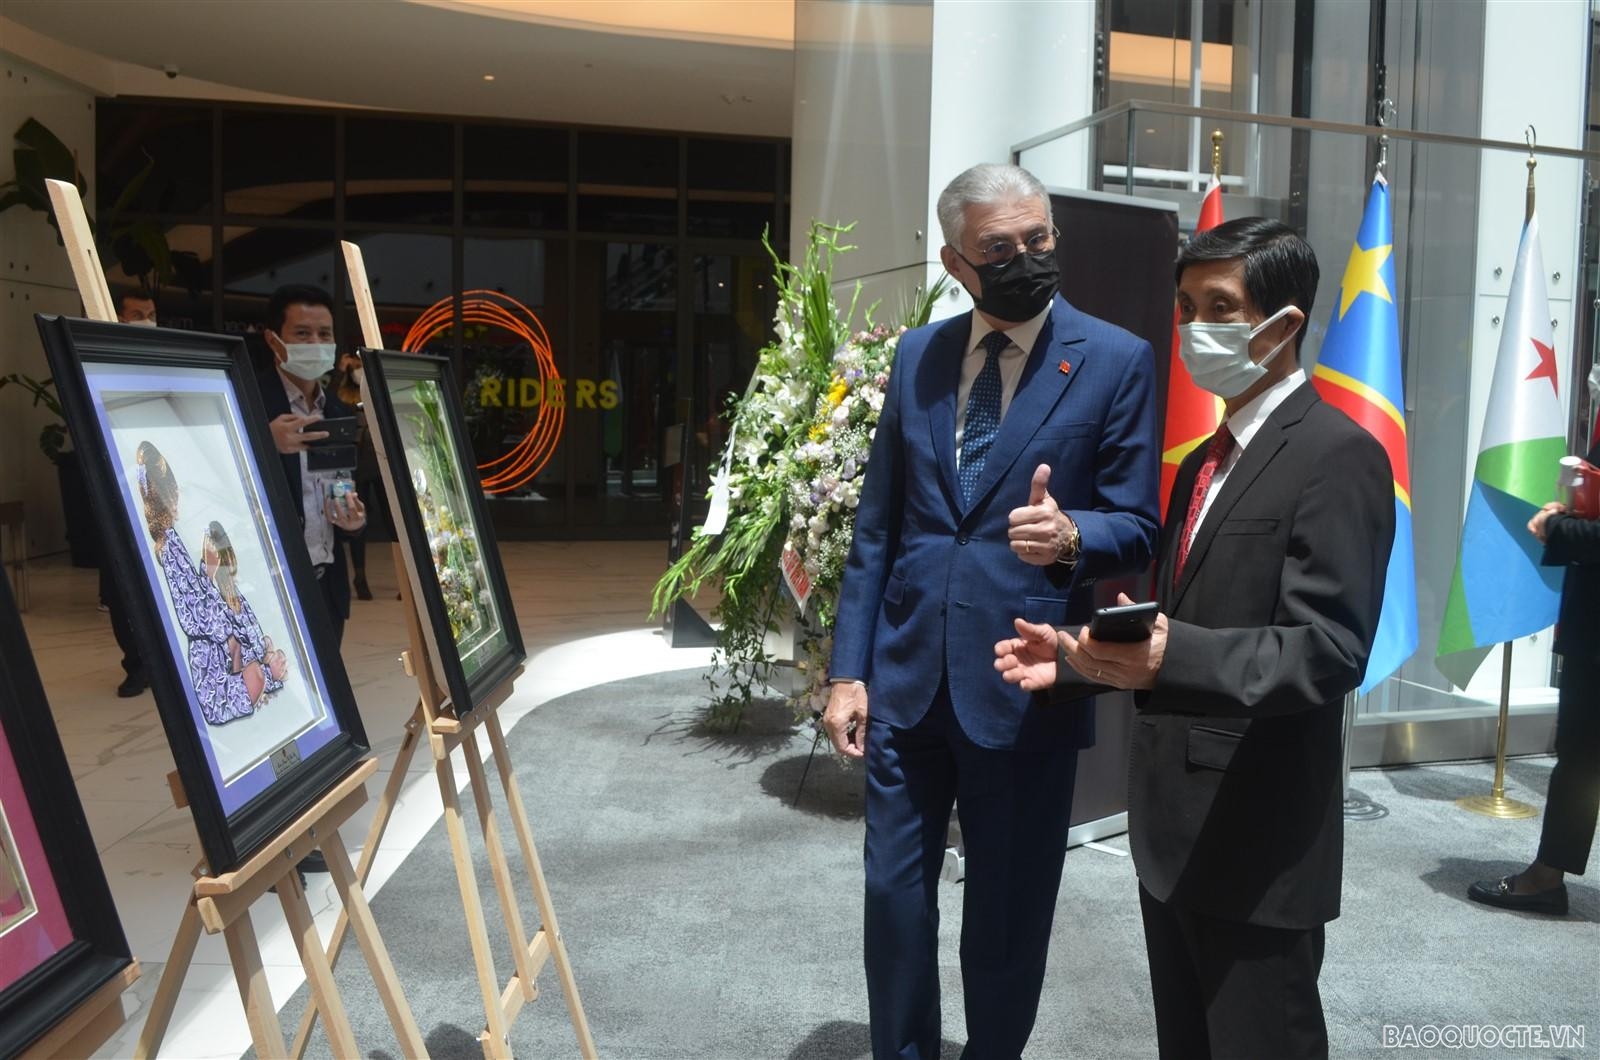 Đại sứ quán Việt Nam tại Thổ Nhĩ Kỳ tham gia triển lãm tranh thêu tại Ankara